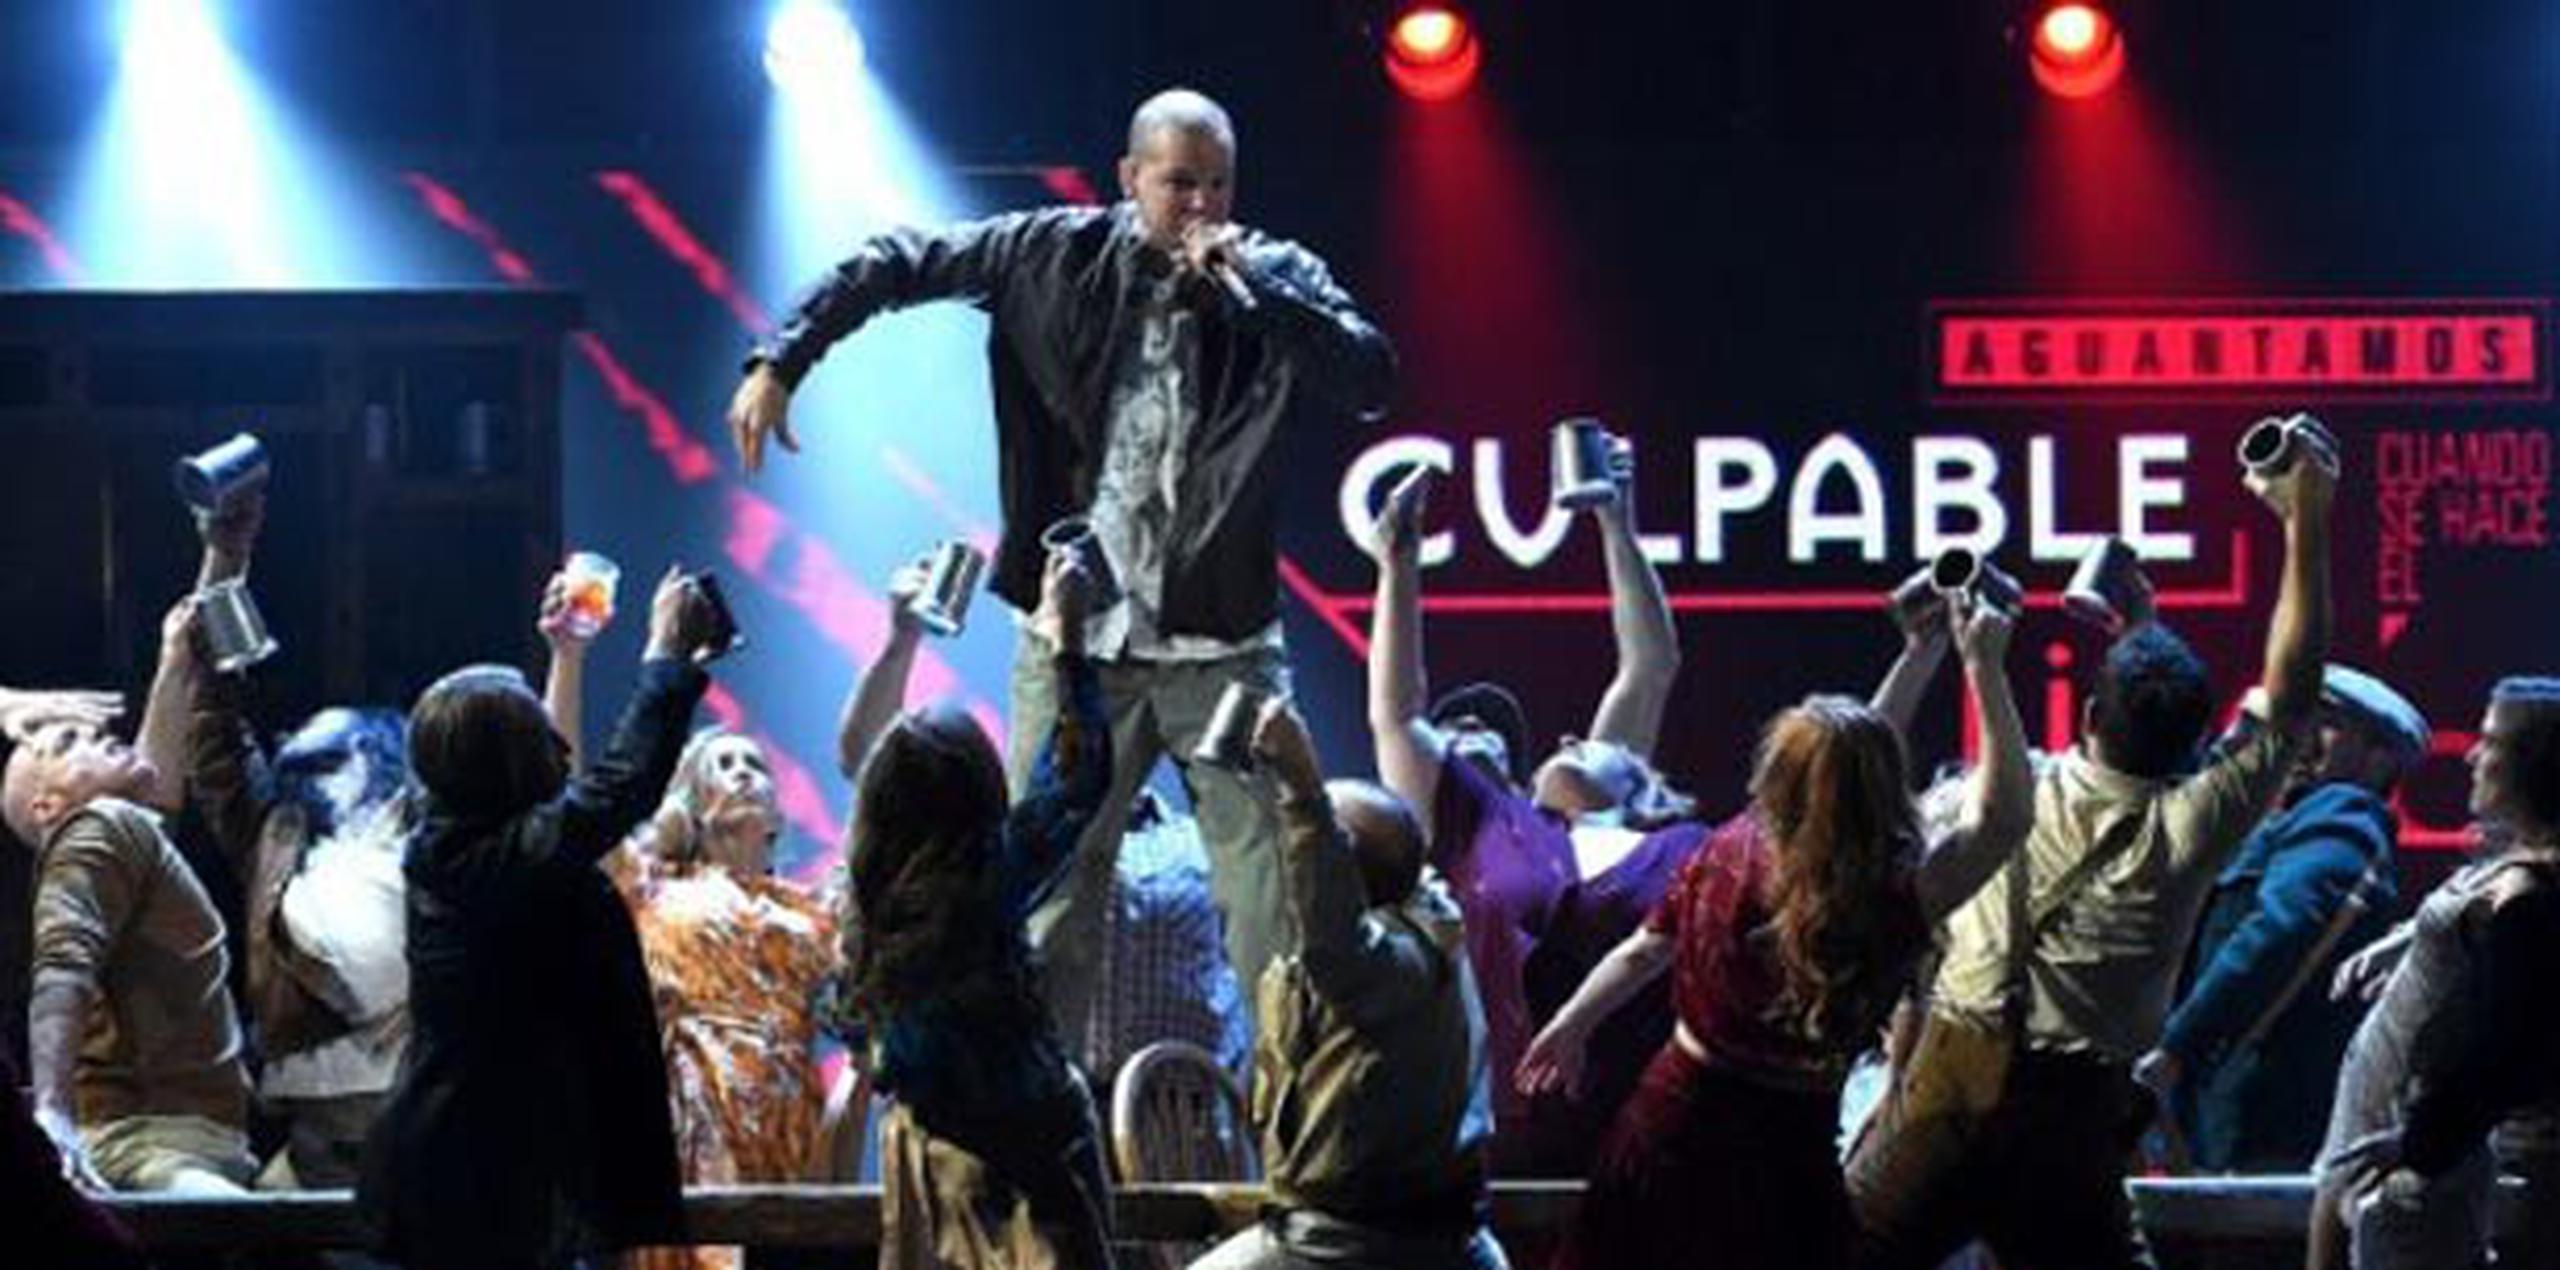 La apertura de los premios Latin Grammy (Univisión), que comenzó con 15 minutos de demora debido al discurso de Obama, estuvo a cargo de Calle 13.